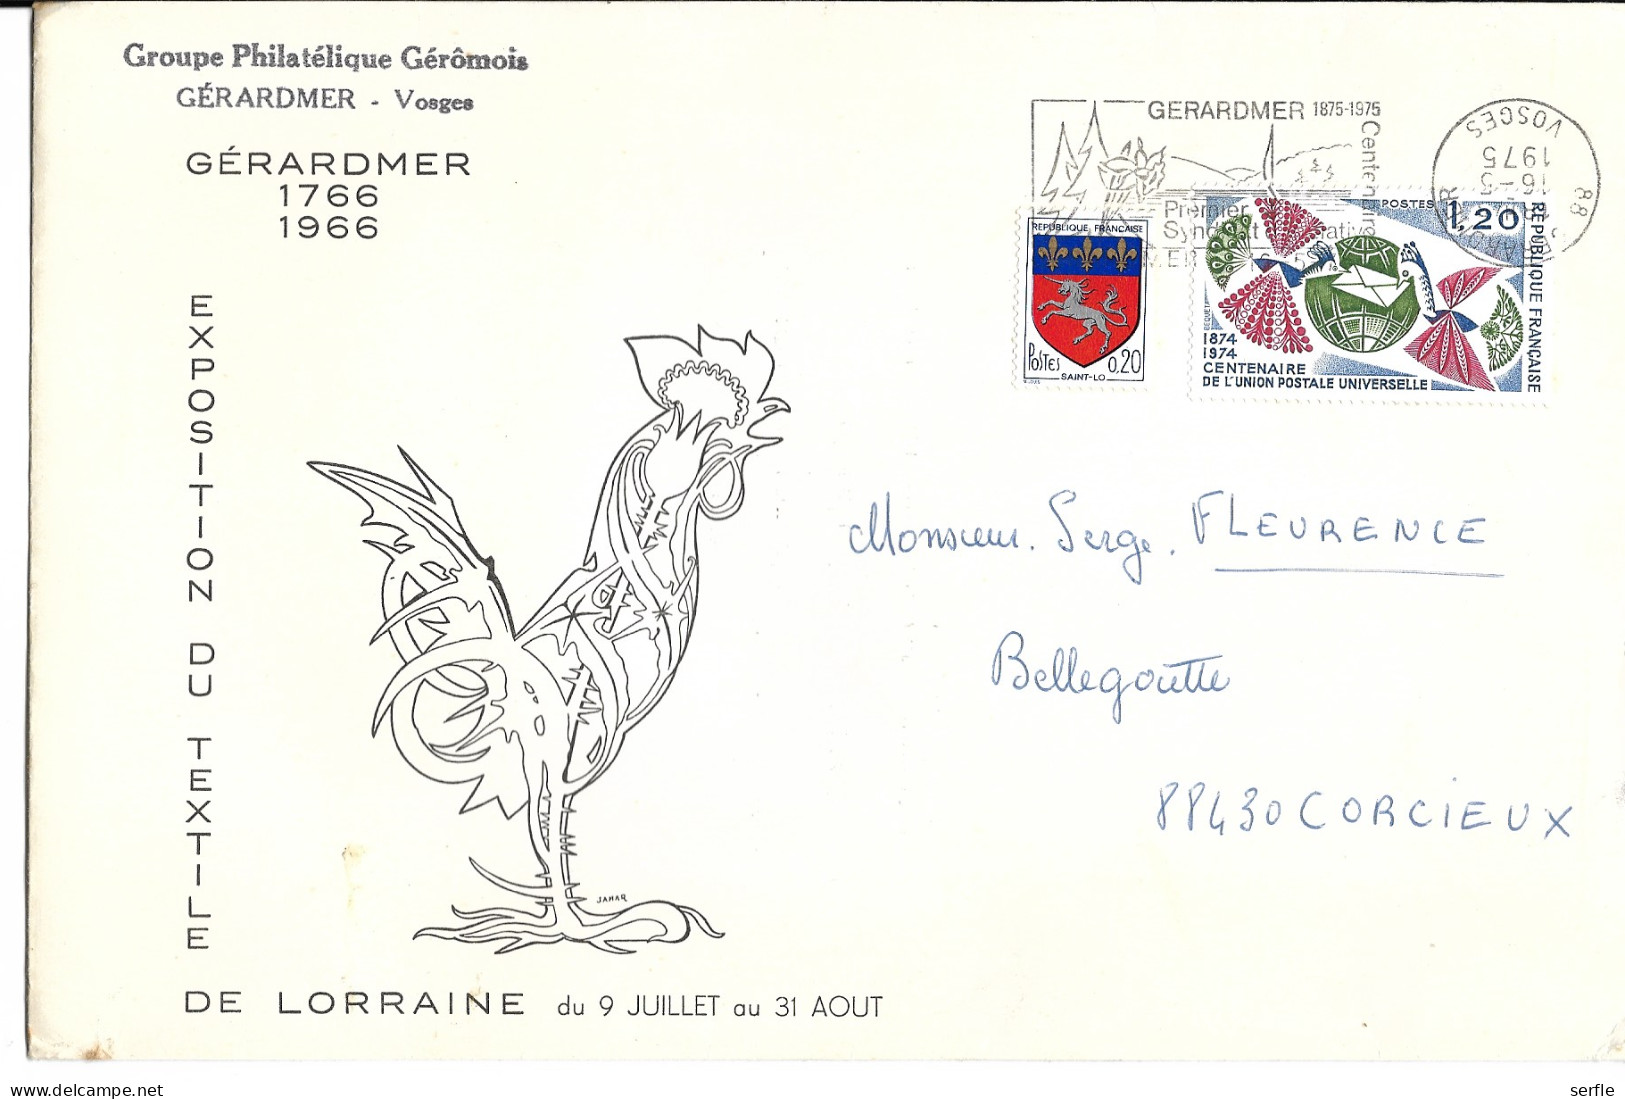 88 - Gérardmer - Publicité Sur Enveloppe Pour "Groupe Philatélique Gérômois" - Covers & Documents